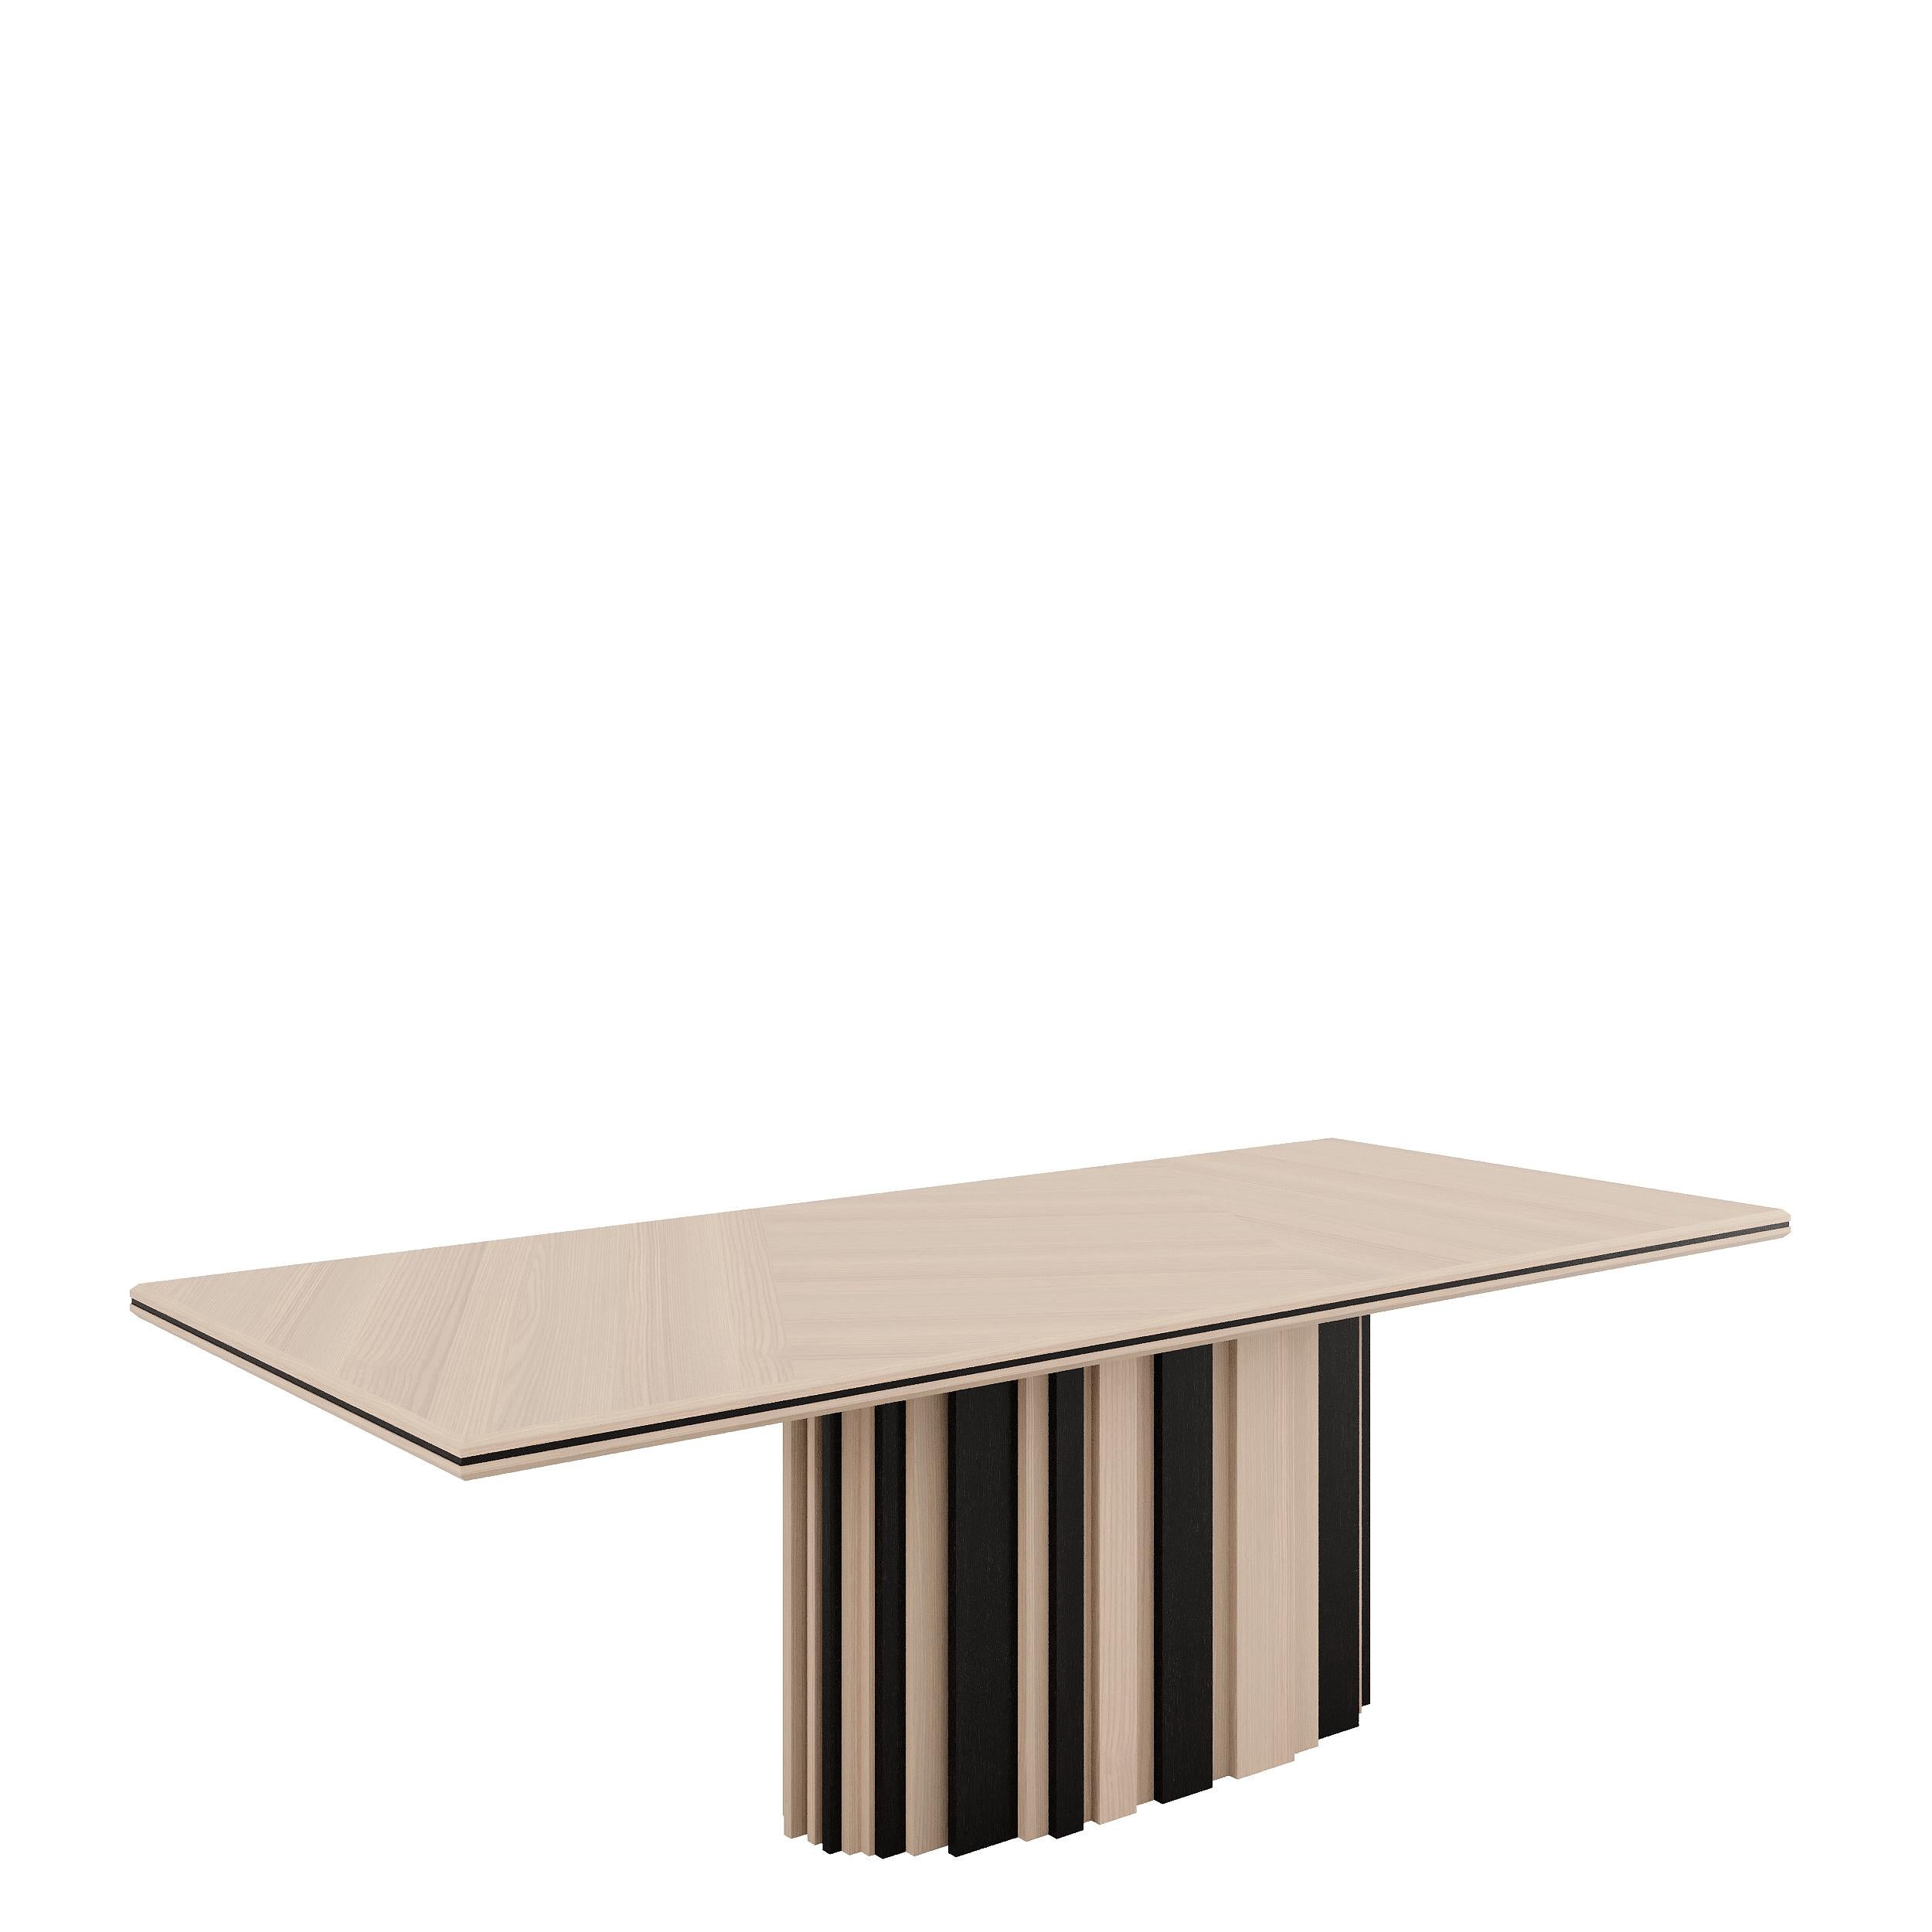 Il tavolo da pranzo BETSY è caratterizzato da una semplicità geometrica, il cui ampio piano poggia sulla base centrale allungata, fornendo una stabilità e un sostegno completi al tavolo. Disponibile in laccato o in legno impiallacciato, Betsy